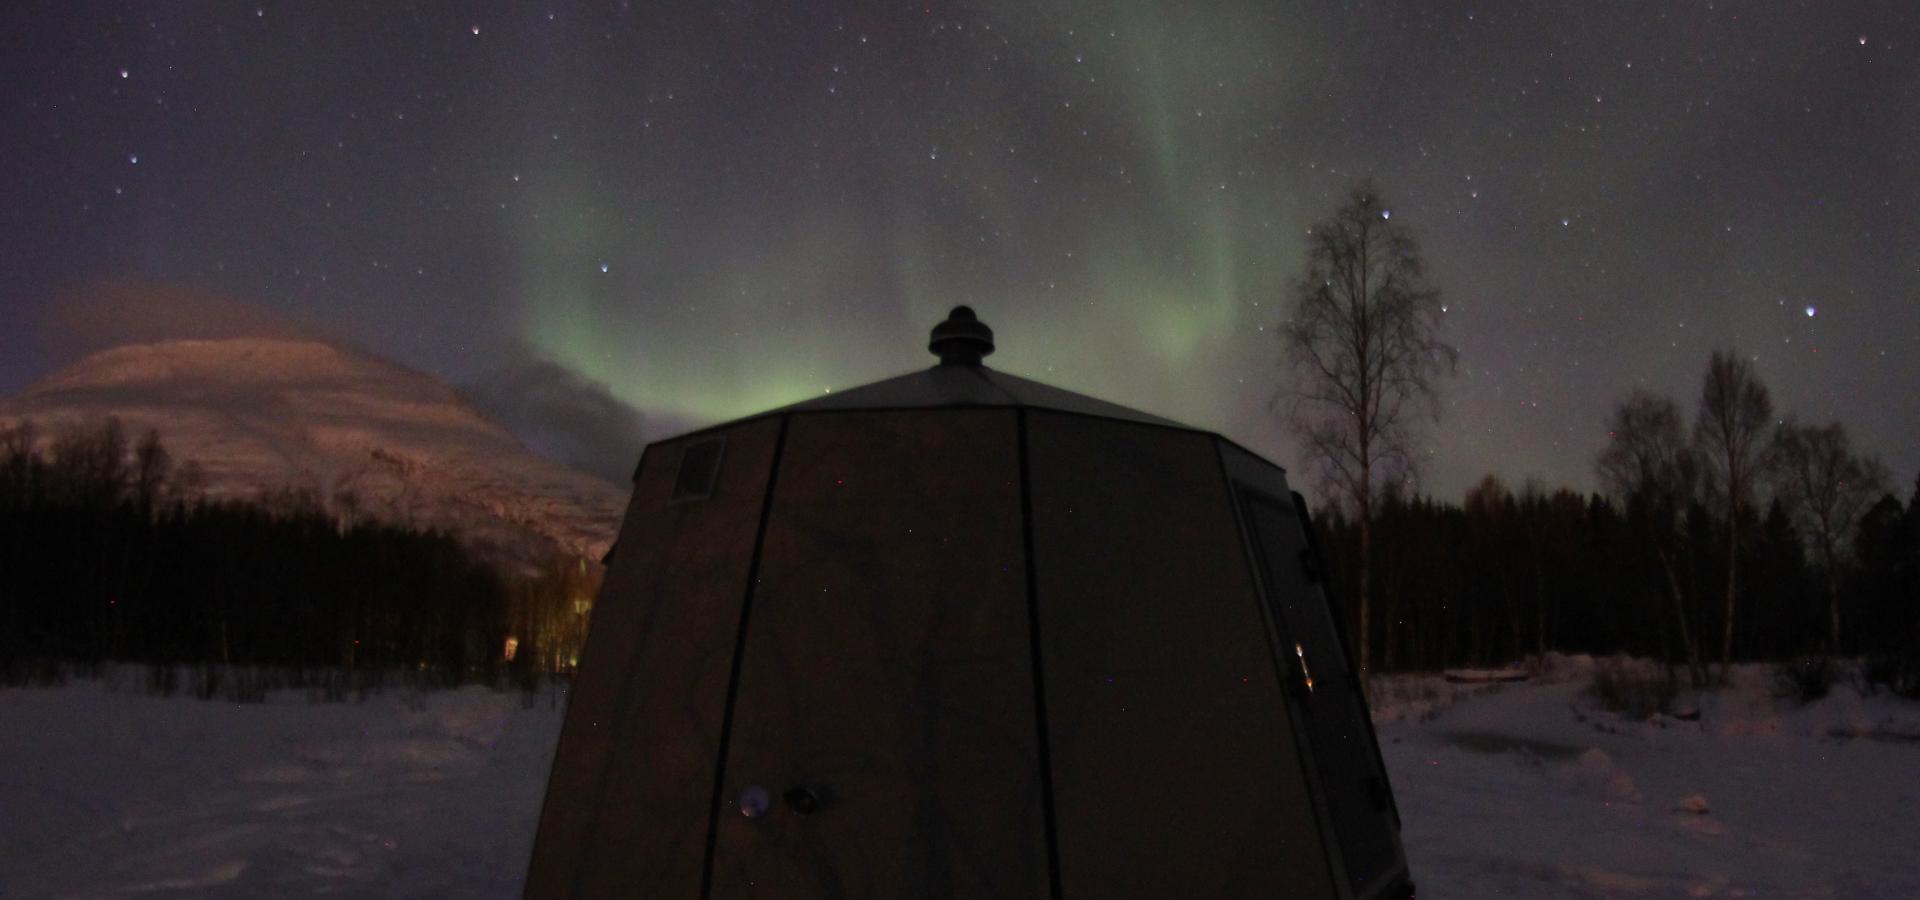 Aurora hut, northern lights